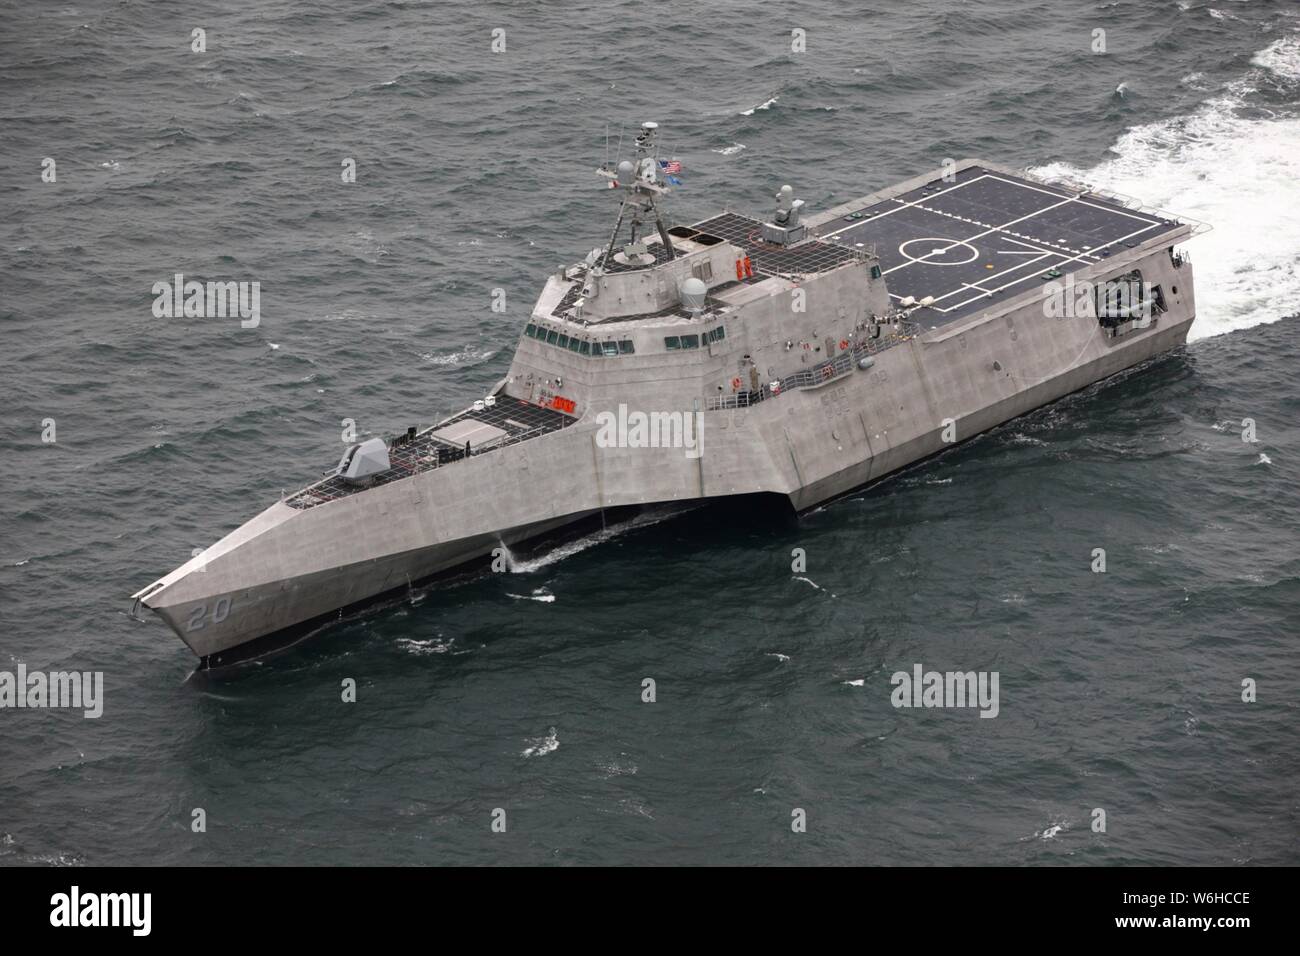 Die Zukunft U.S Navy Unabhängigkeit - Variante Littoral Combat Ship USS Cincinnati ist für Abnahmetests, das sind die letzten bedeutenden Meilenstein vor der Auslieferung des Schiffes der Marine Juli 18, 2019 im Golf von Mexiko begonnen. Stockfoto